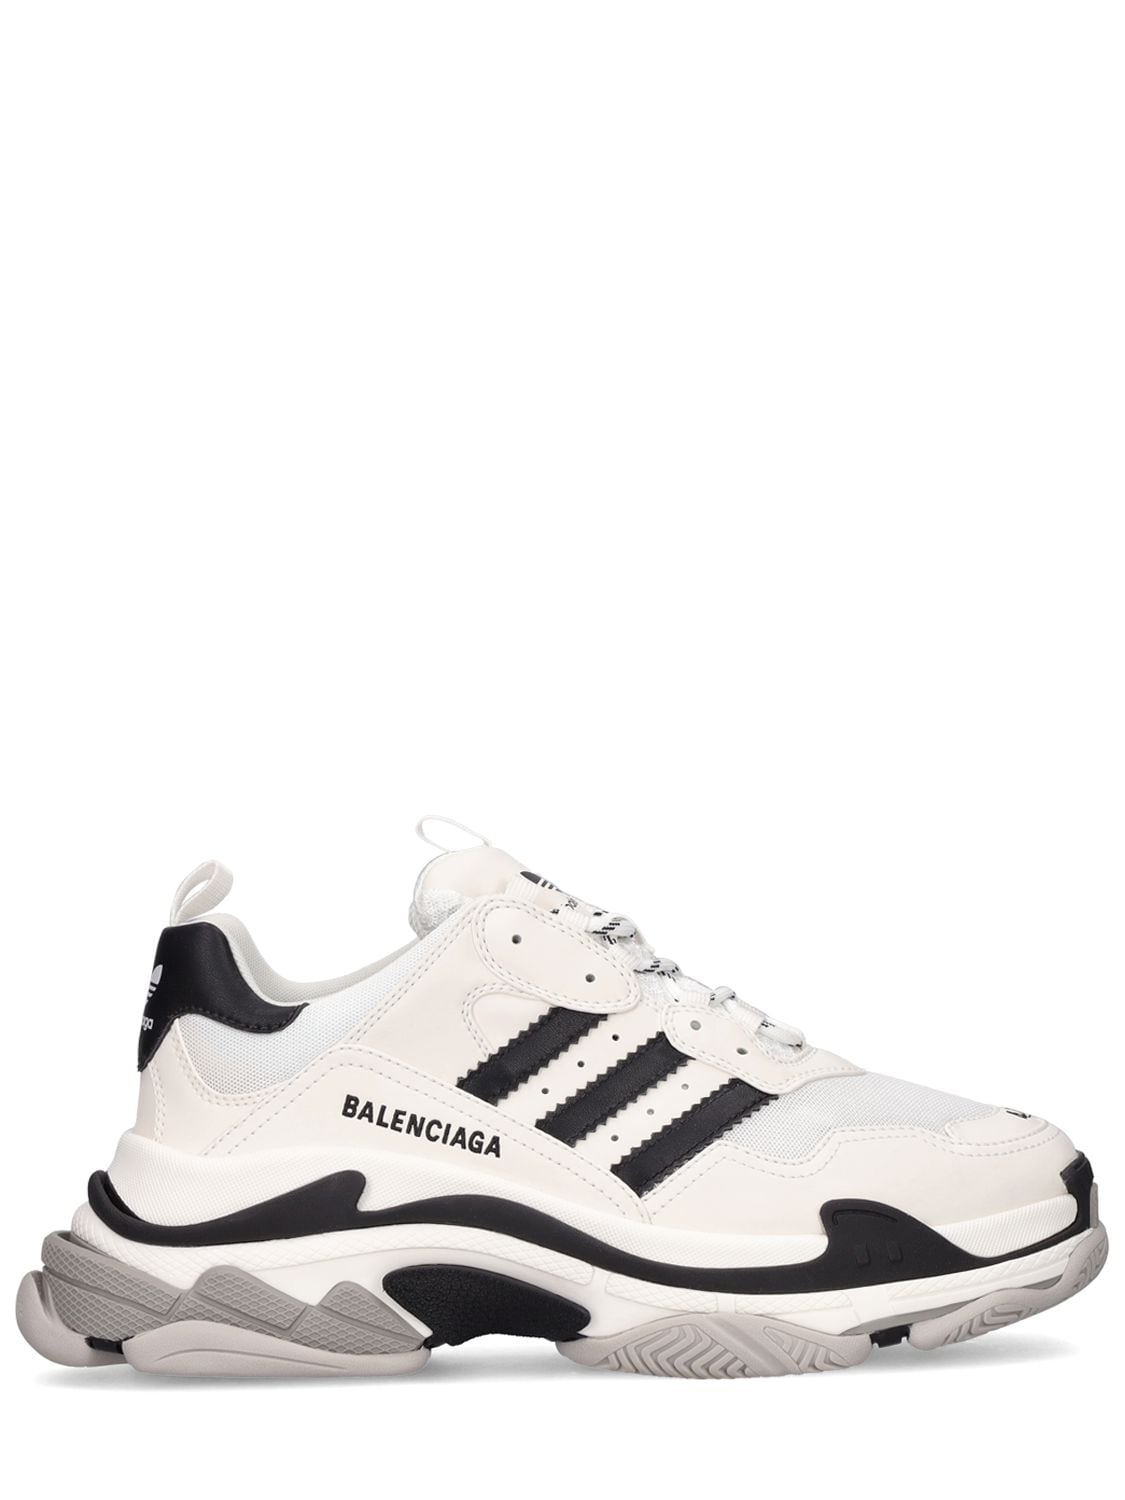 Balenciaga X Adidas Triple S Leather Sneakers White ModeSens